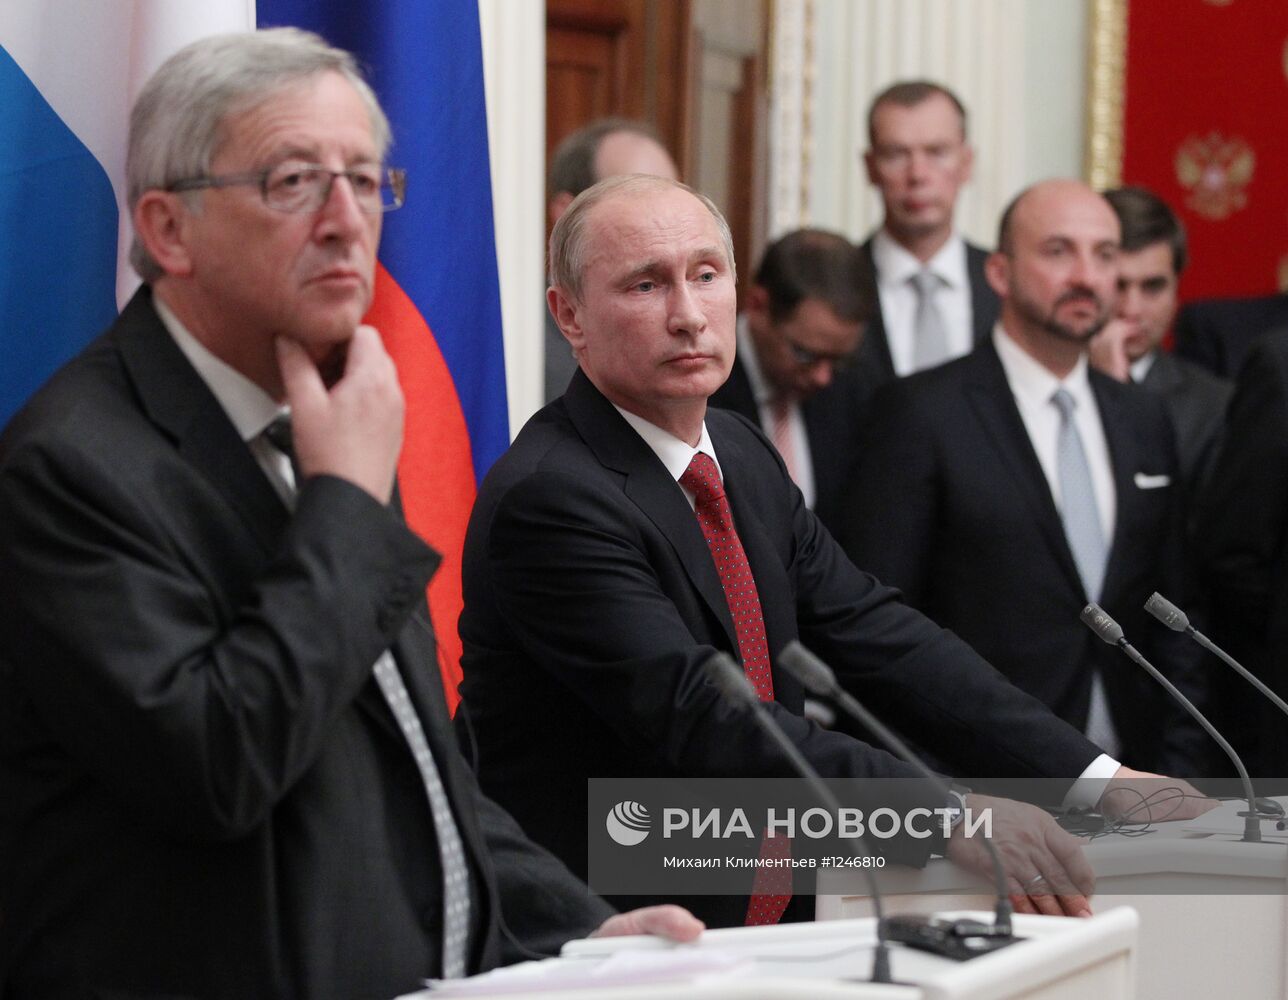 Пресс-конференция Владимира Путина и Жанам-Клода Юнкера в Кремле